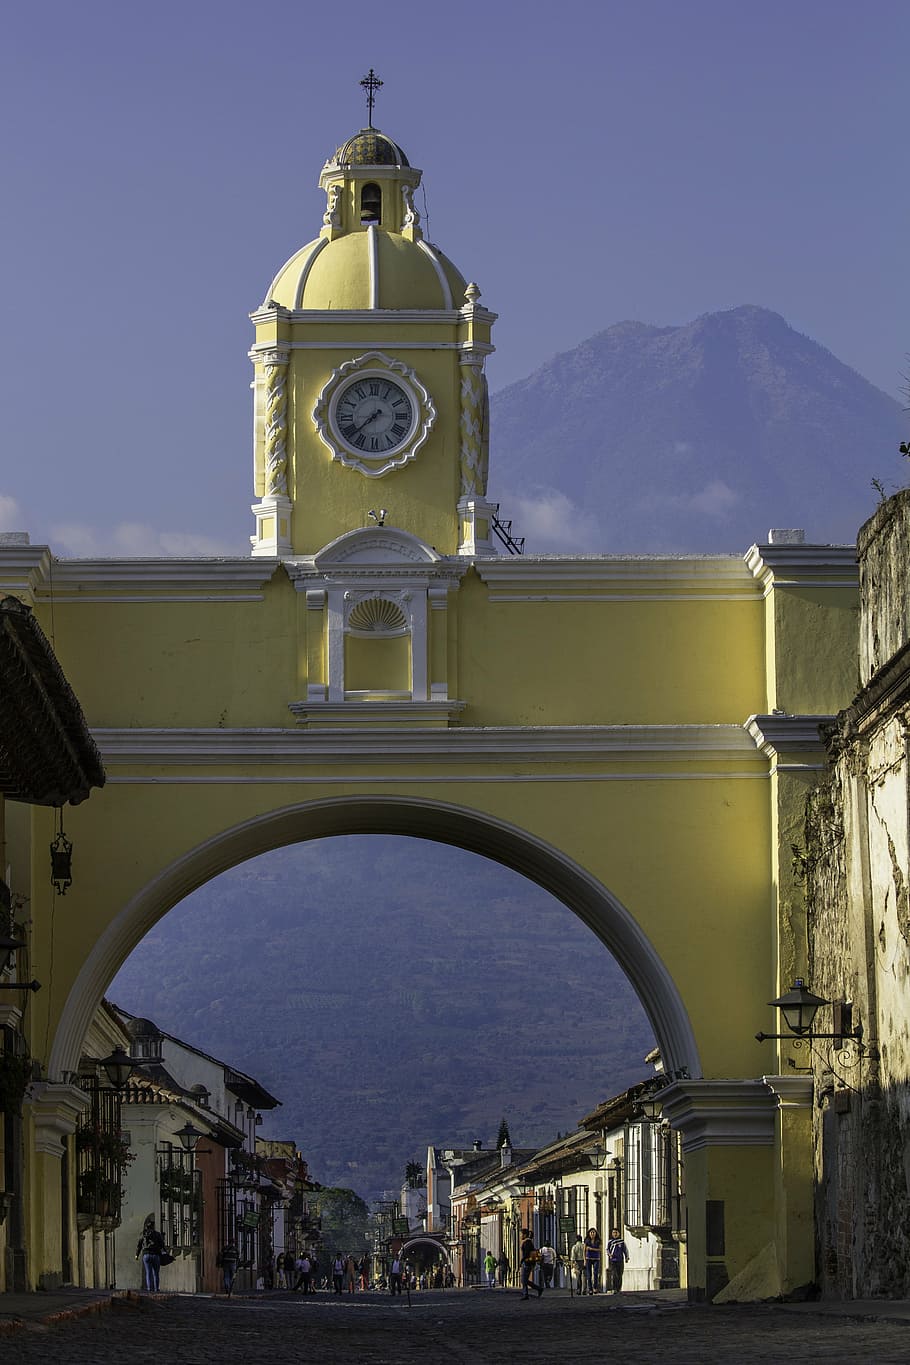 amarillo, concreto, reloj de la torre, durante el día, guatemala, centroamérica, antiguaguatemala, latinoamérica, perro, calles